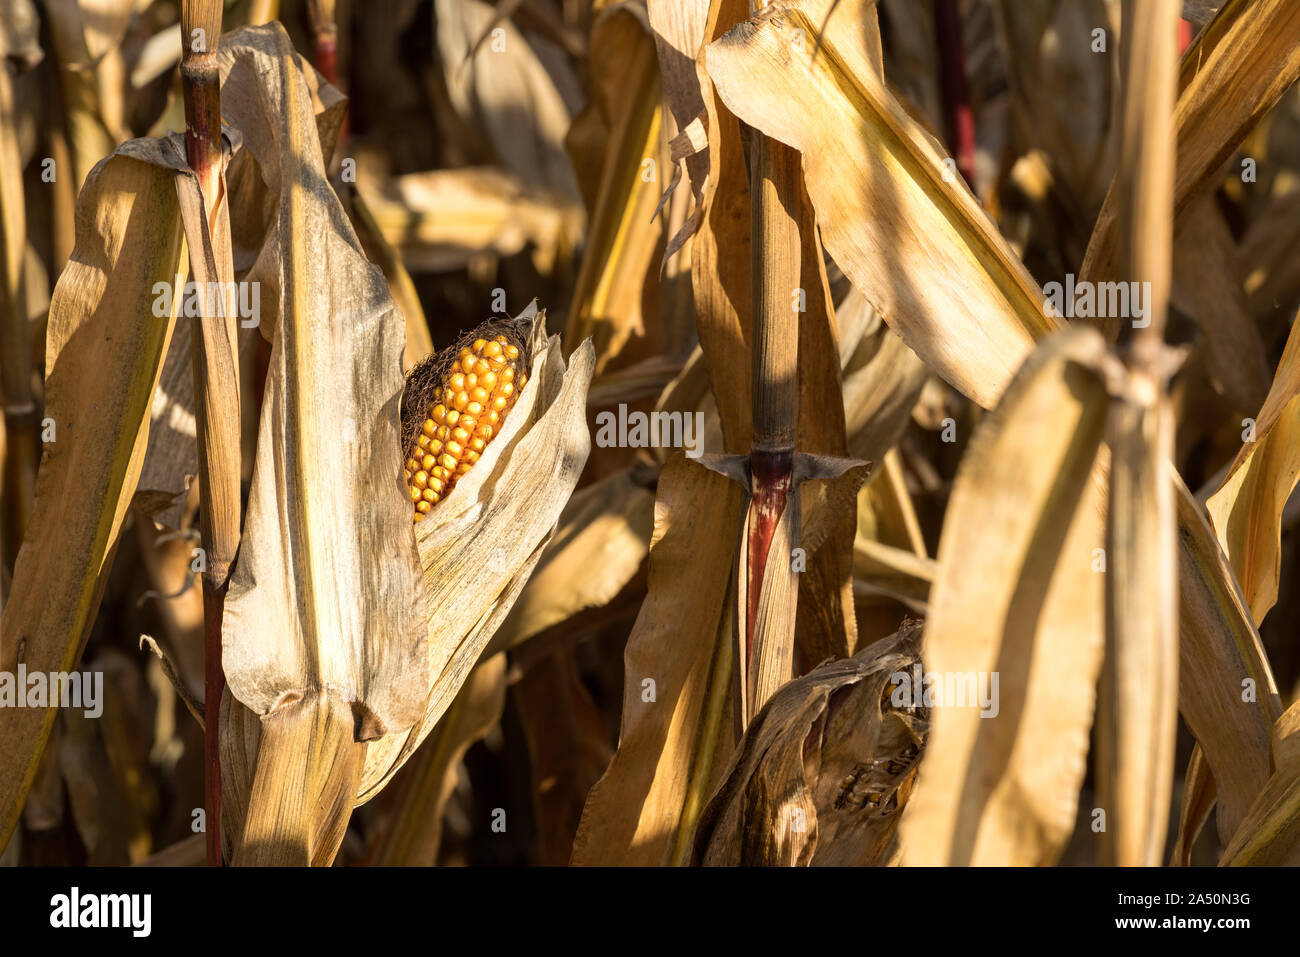 Champ de maïs mûr en octobre, l'alimentation animale, Oberweser, Weser Uplands, Hesse, Germany, Europe Banque D'Images